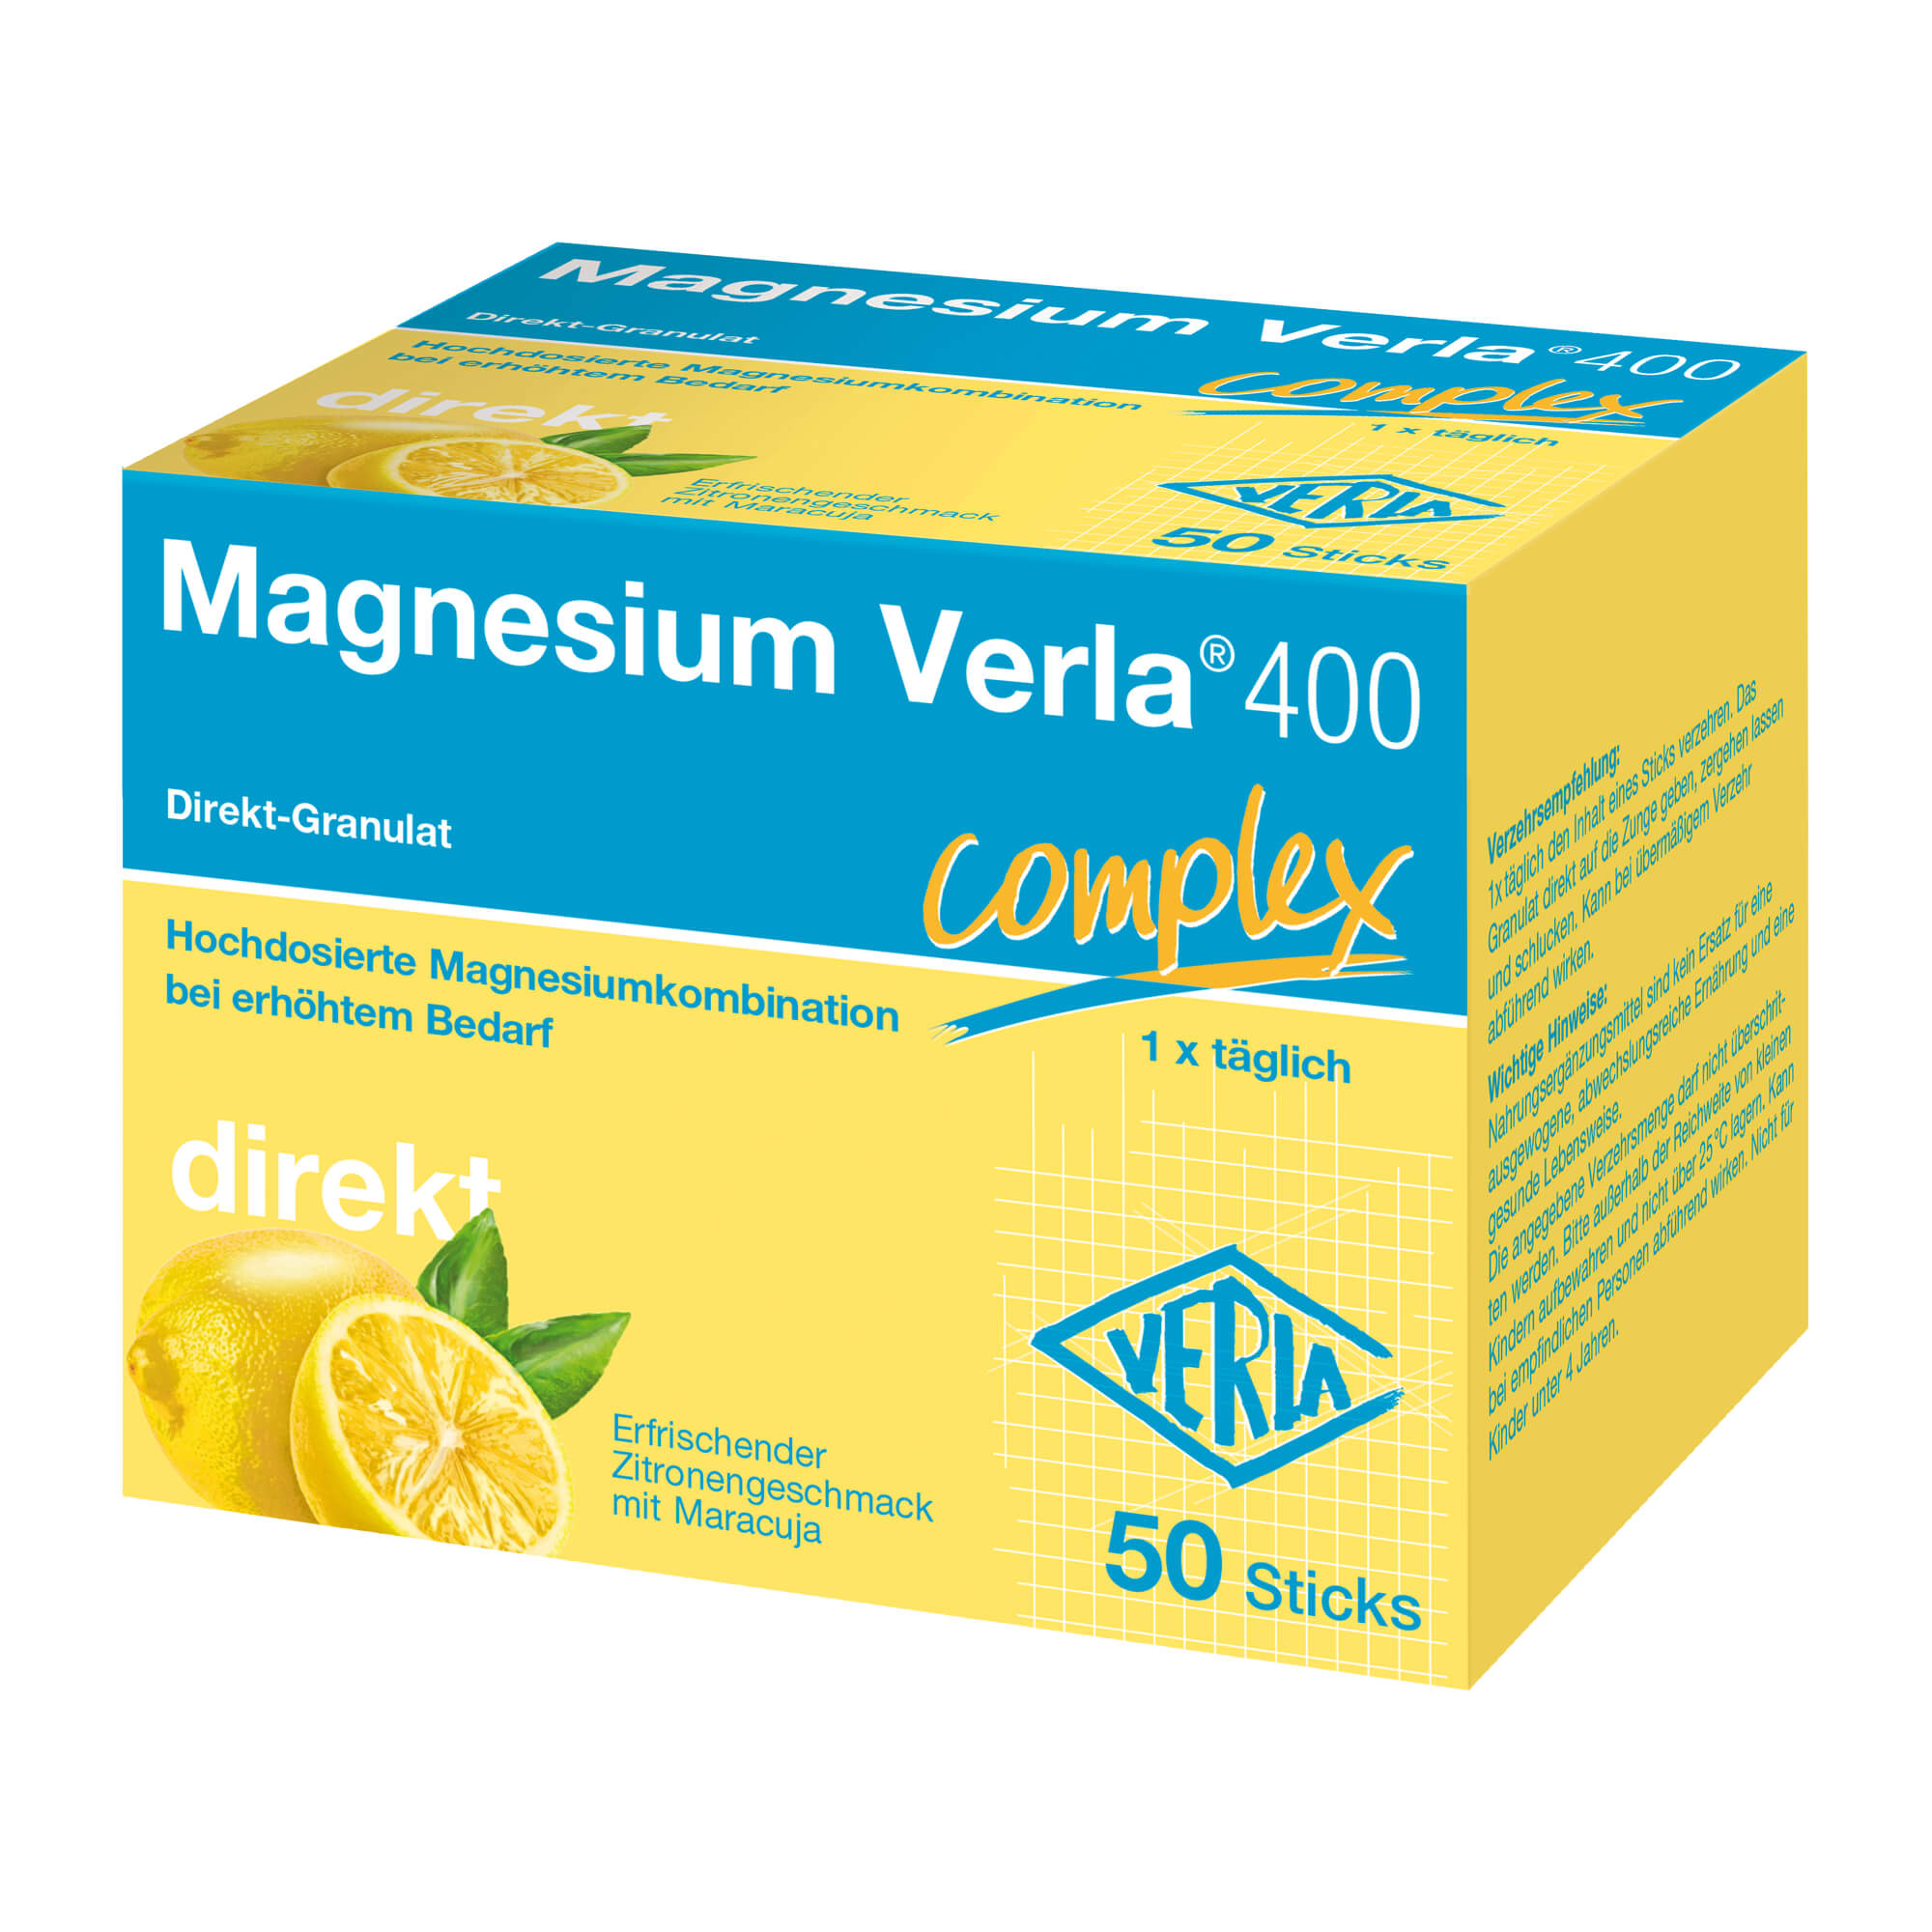 Nahrungsergänzungsmittel mit hochdosierter Magnesiumkombination. Zitronengeschmack mit Maracuja.